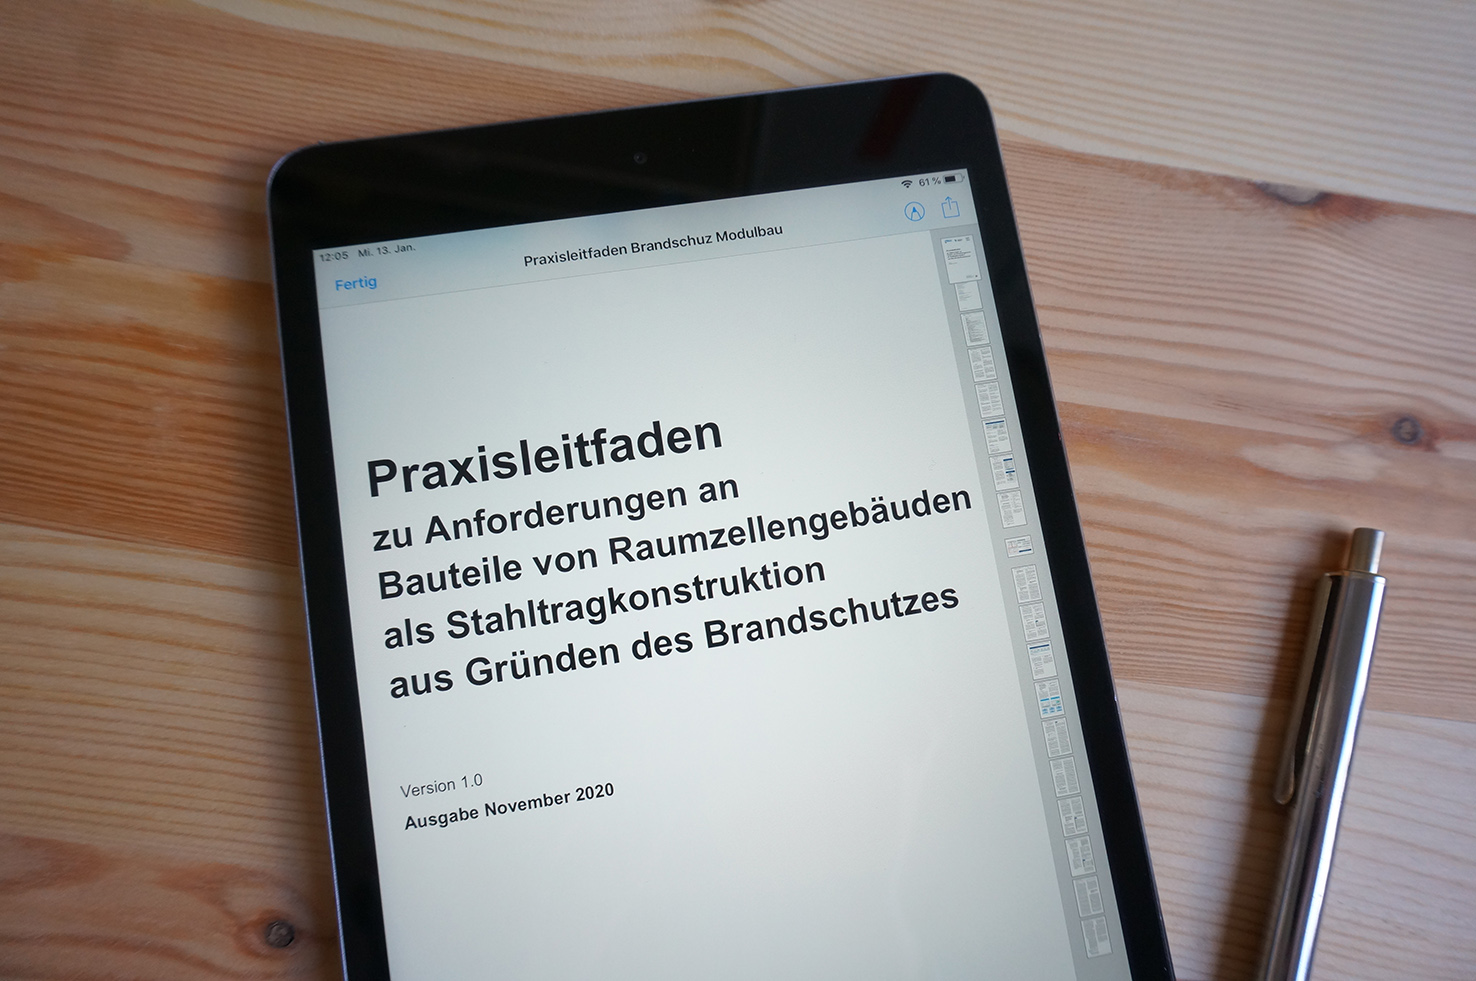 Praxisleitfaden_CoverёCampus-GmbH References 